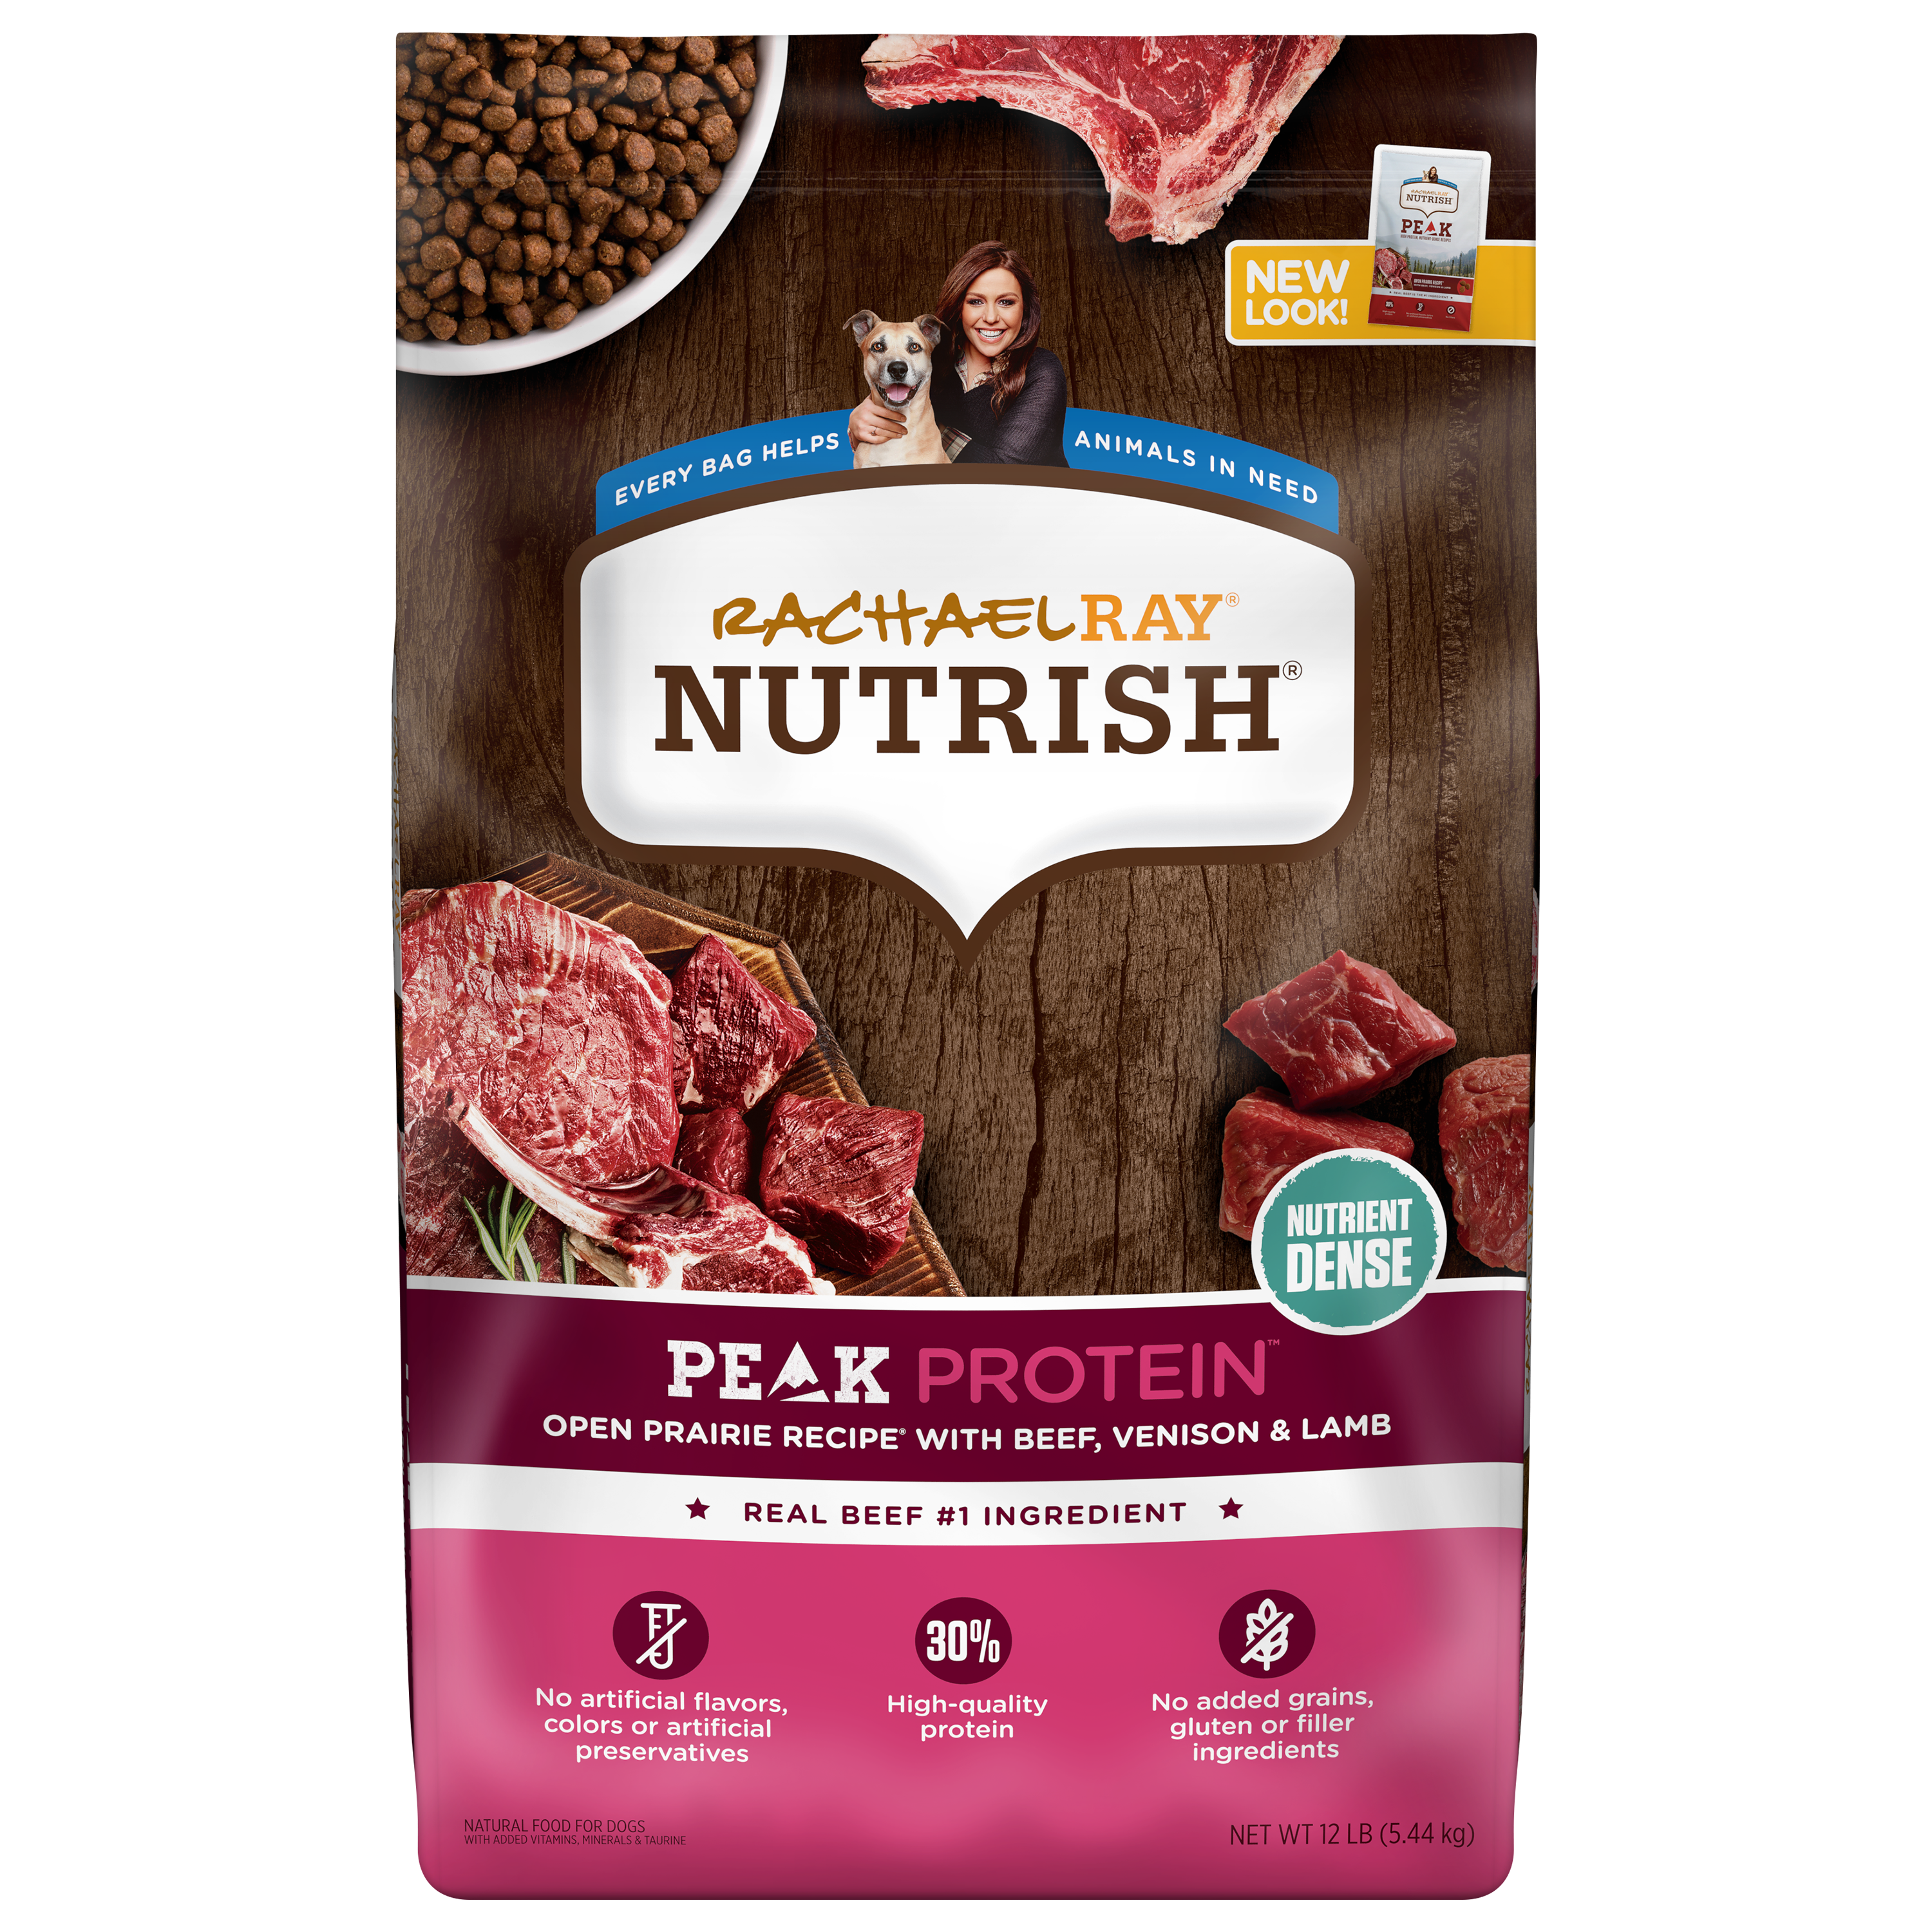 Peak&nbsp;Protein&nbsp;Open Prairie Recipe&nbsp;With&nbsp;Beef, Venison &amp; Lamb |&nbsp;Rachael Ray®&nbsp;Nutrish®